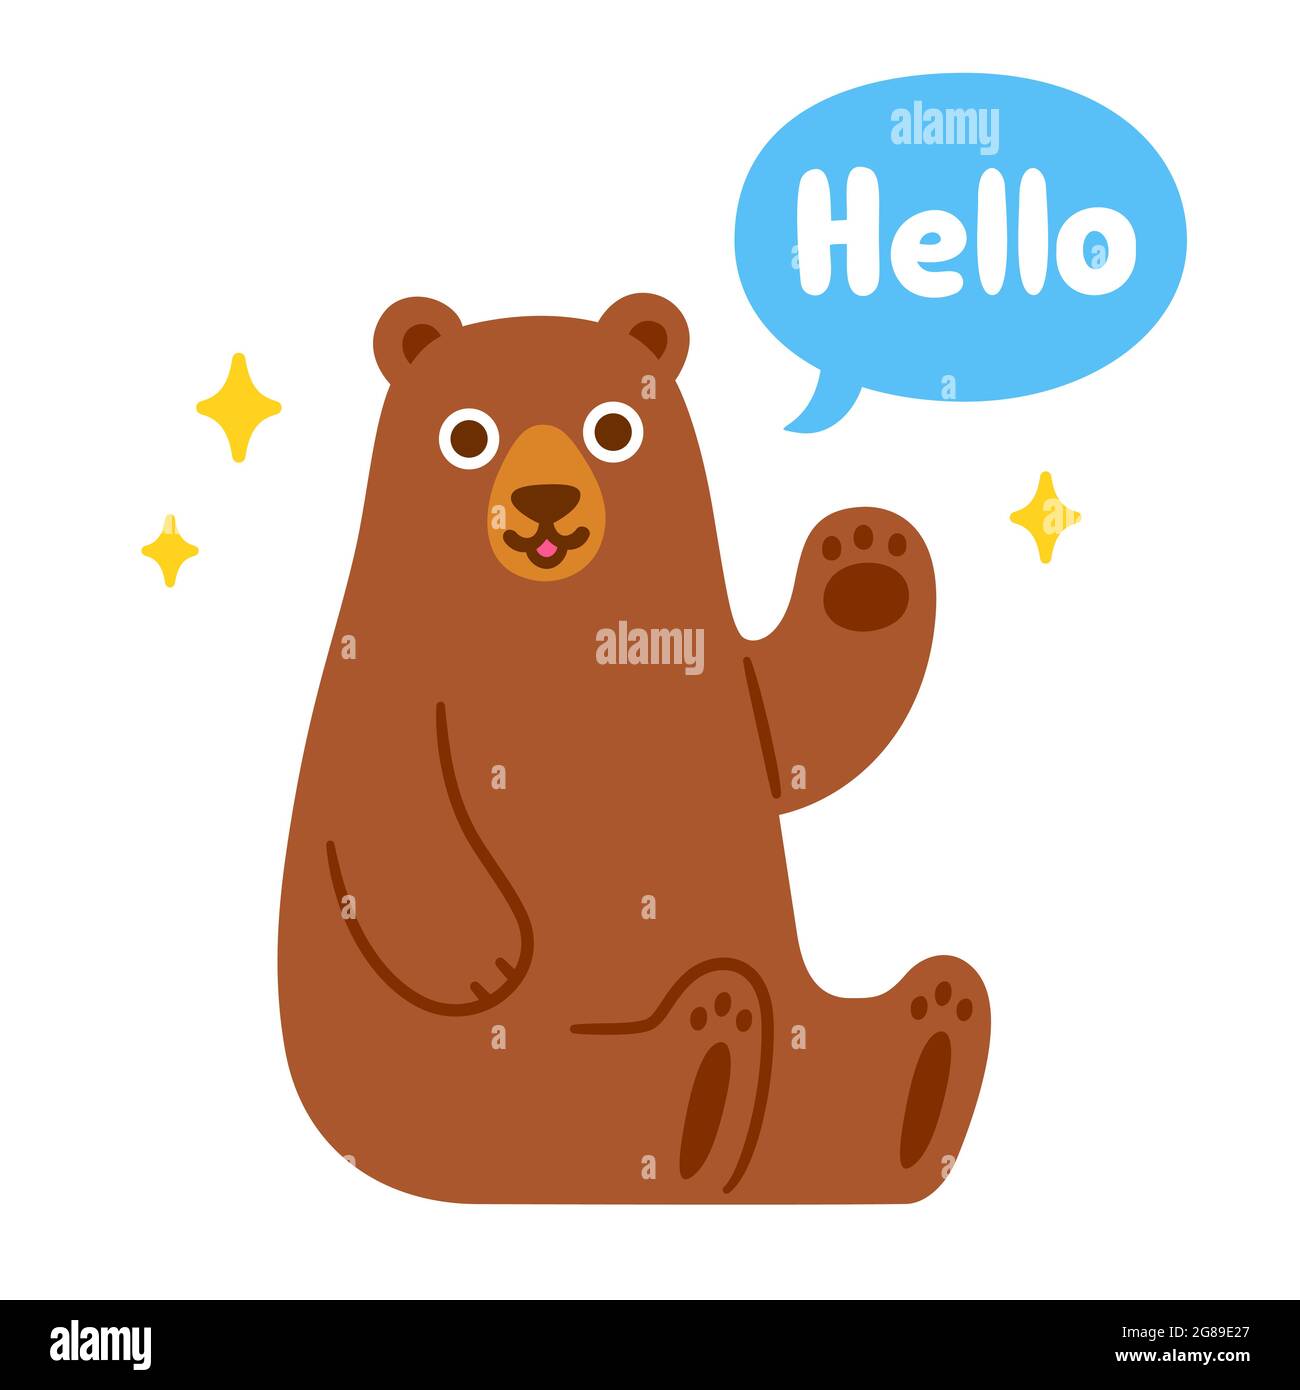 Un adorable ours de dessin animé assis et agitant avec une bulle de discours disant Bonjour. Personnage animal drôle, illustration vectorielle isolée. Illustration de Vecteur